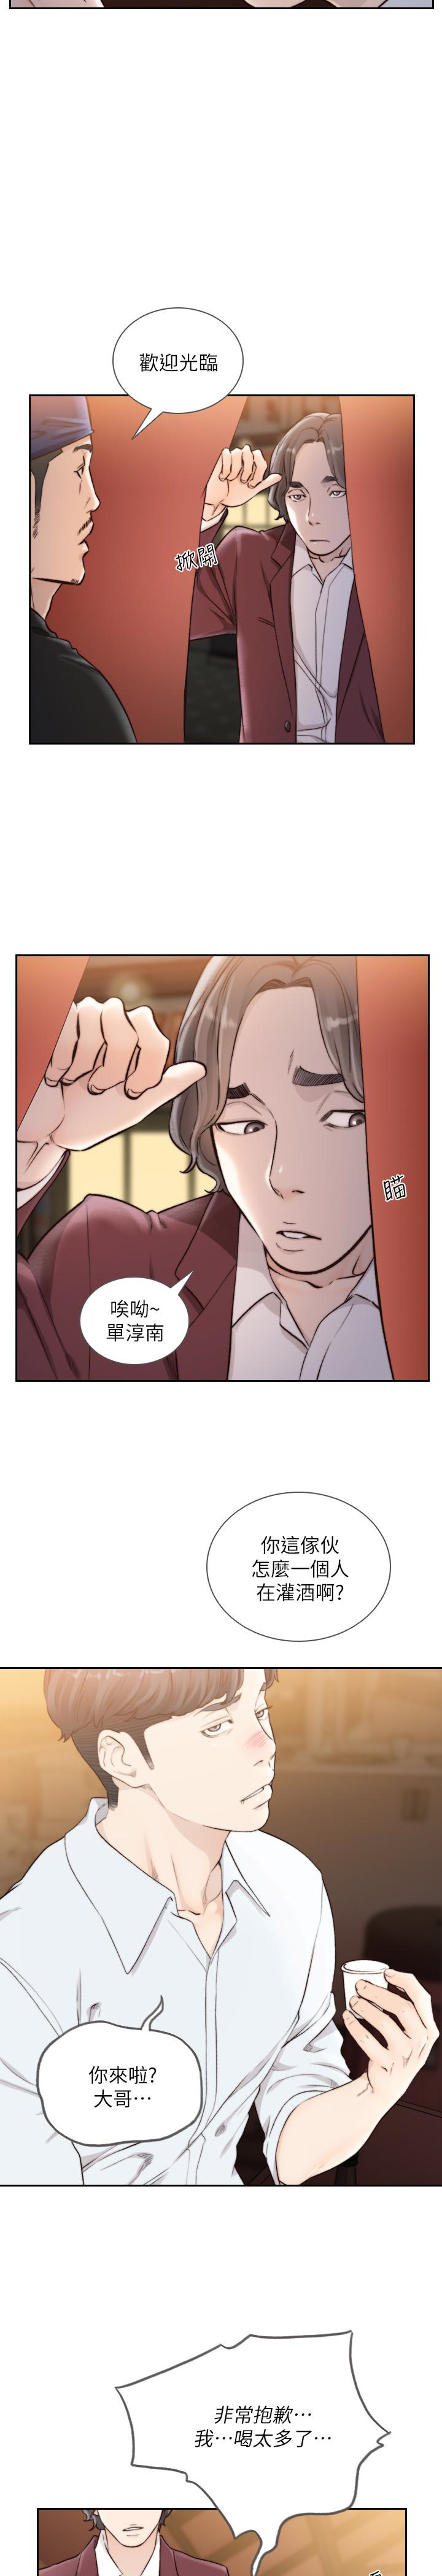 韩国污漫画 前女友 第39话-亚瑛的震撼告白 13